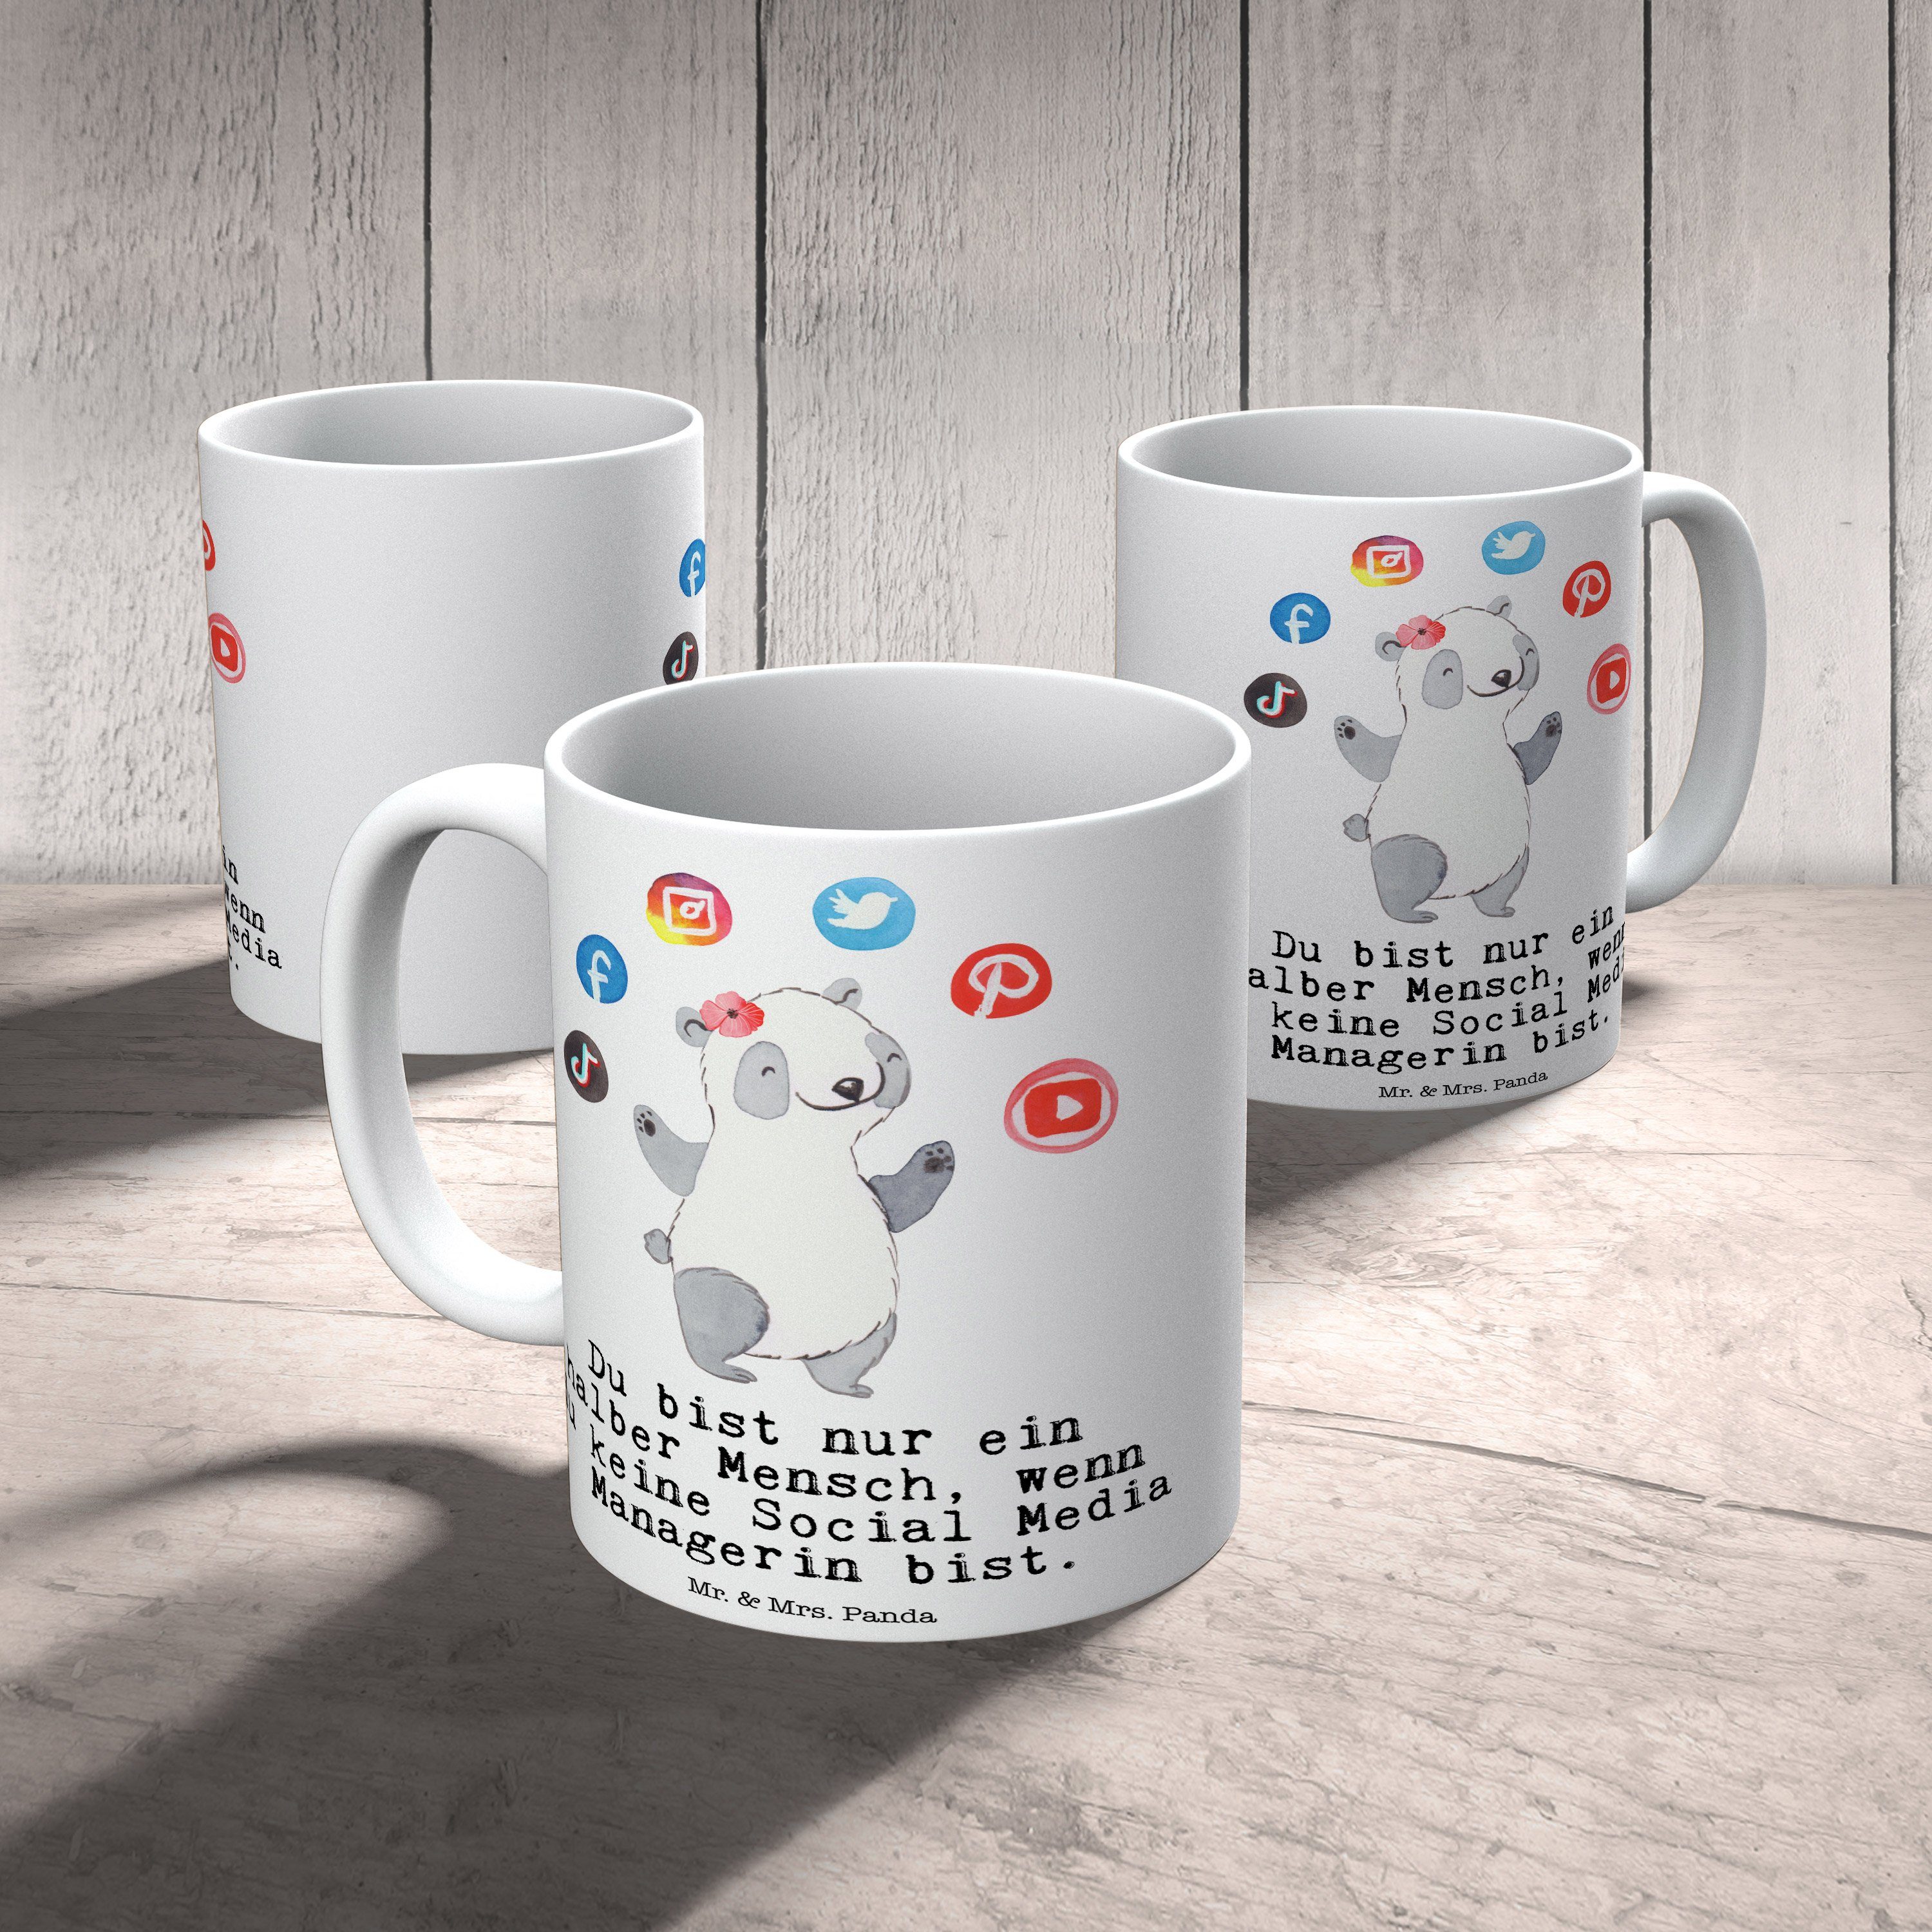 Mr. & Mrs. Panda Media - Managerin Keramik Tasse Weiß Herz Social - Firma, Geschenk, Arbeitskoll, mit